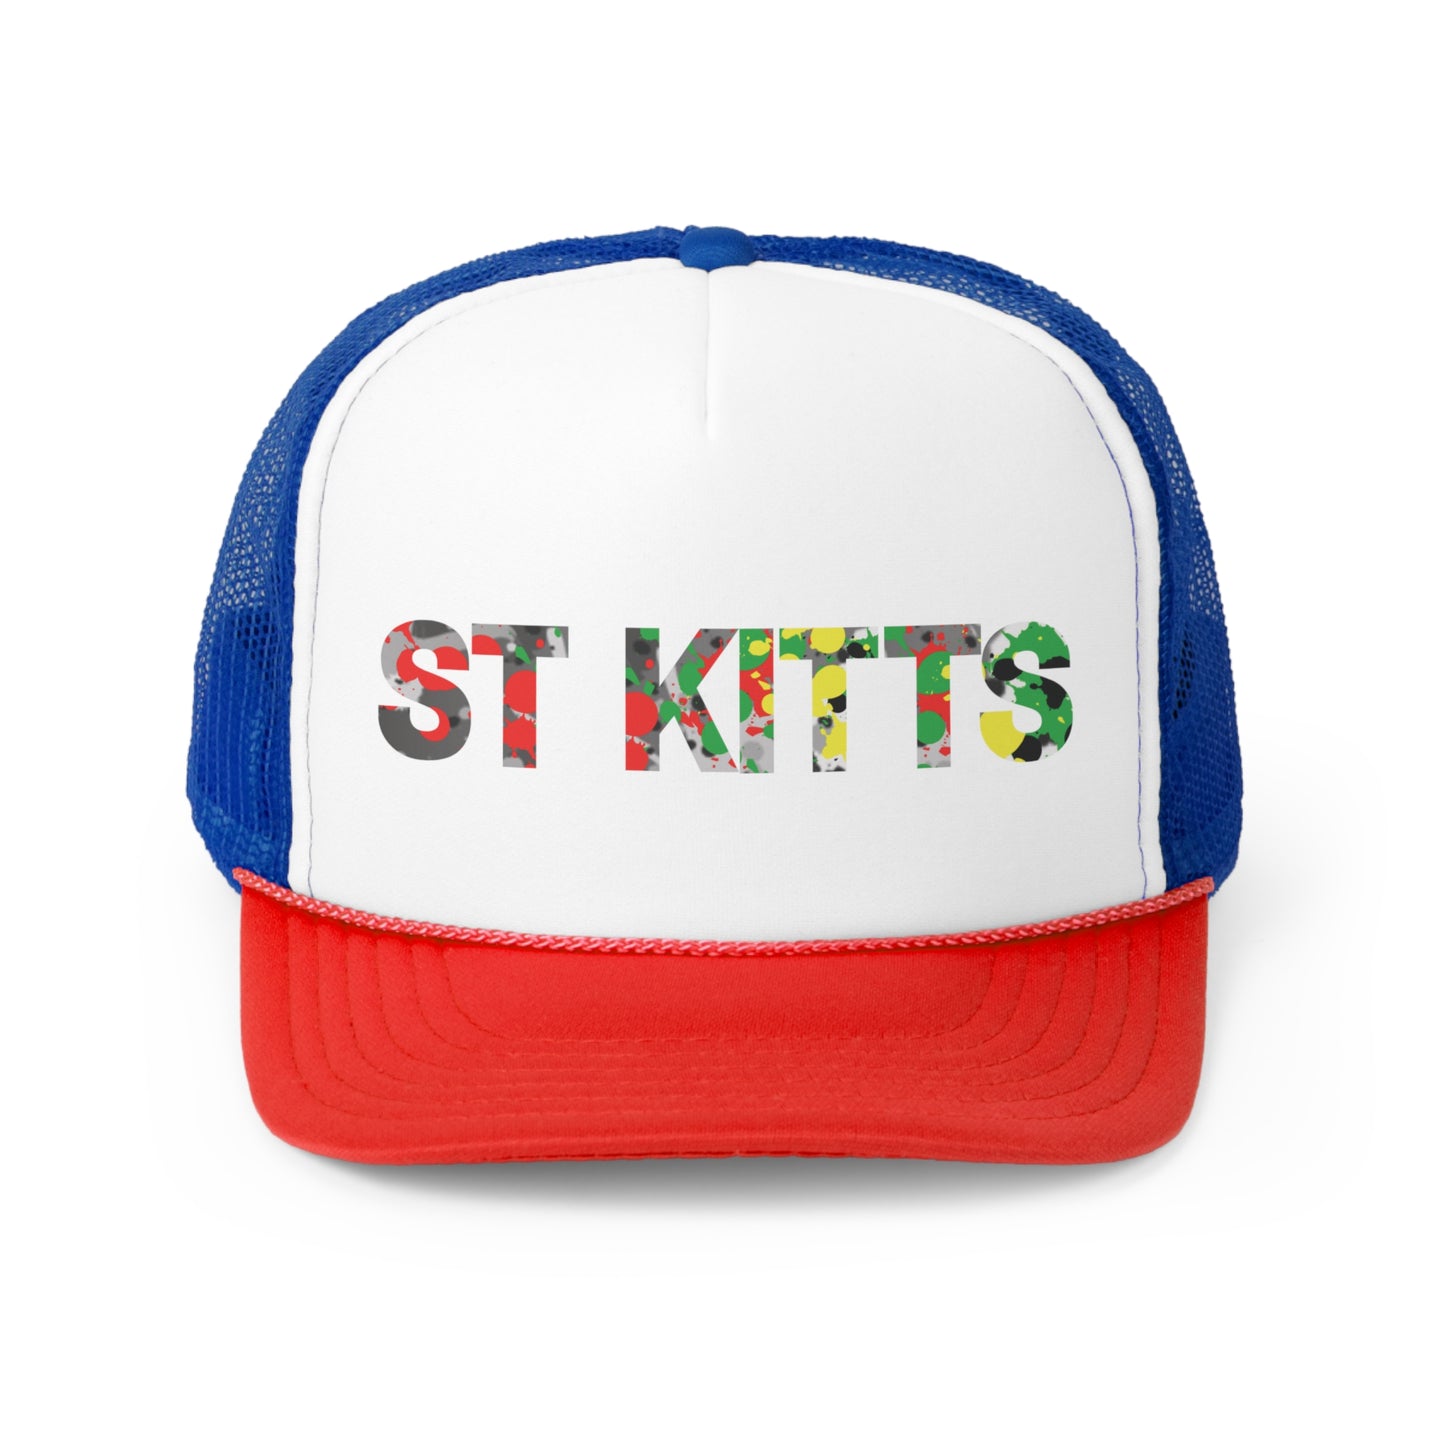 St. Kitts Trucker Caps